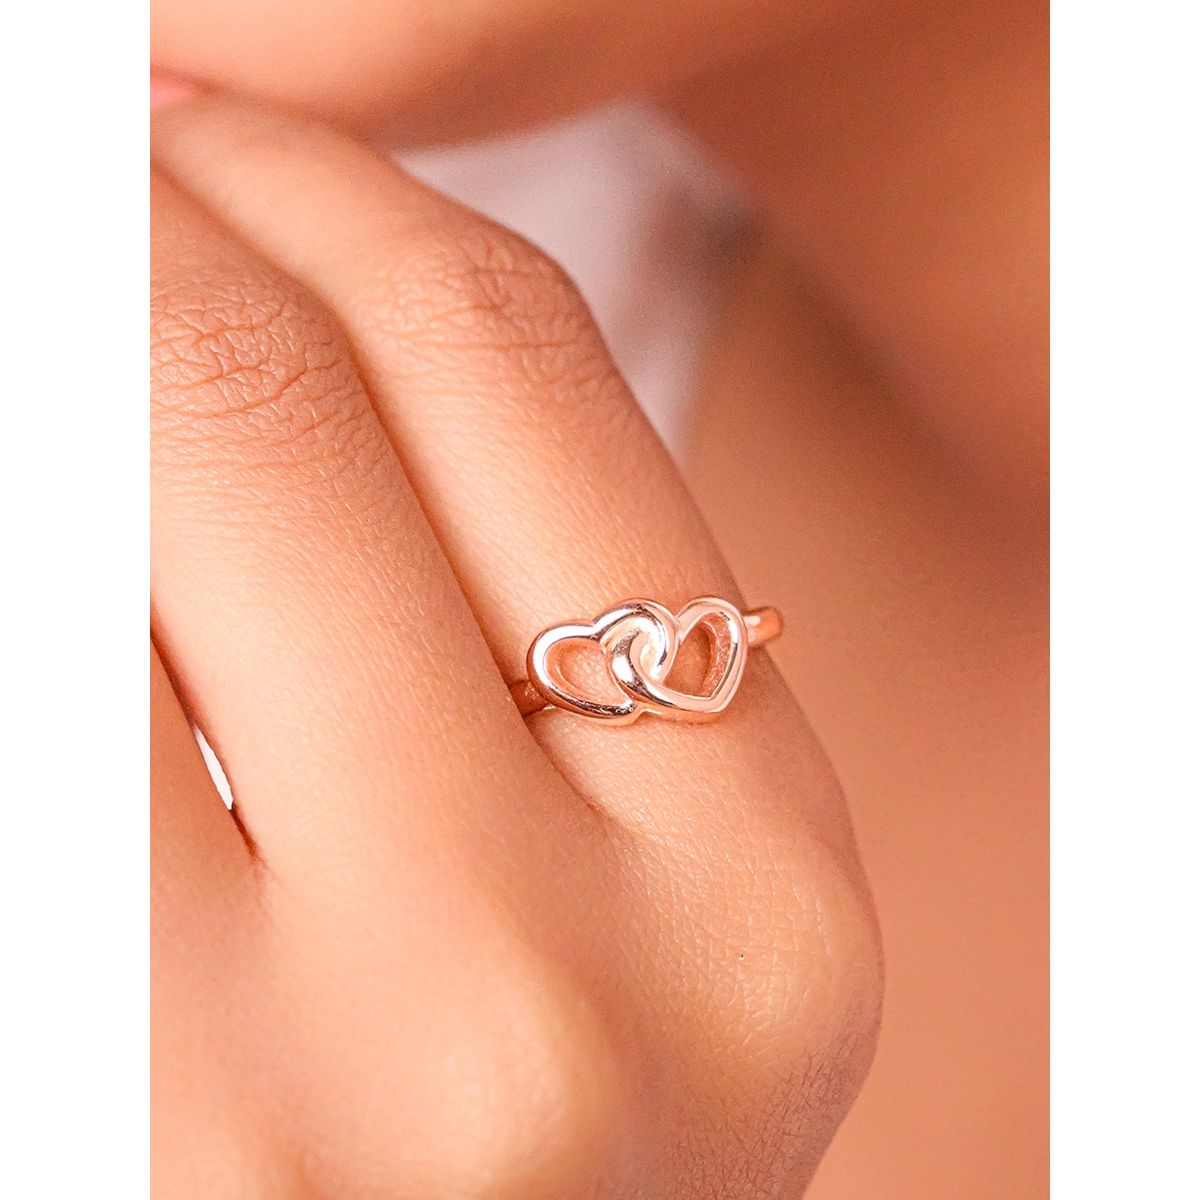 Top 16 Simple Engagement Rings | Fascinating Diamonds